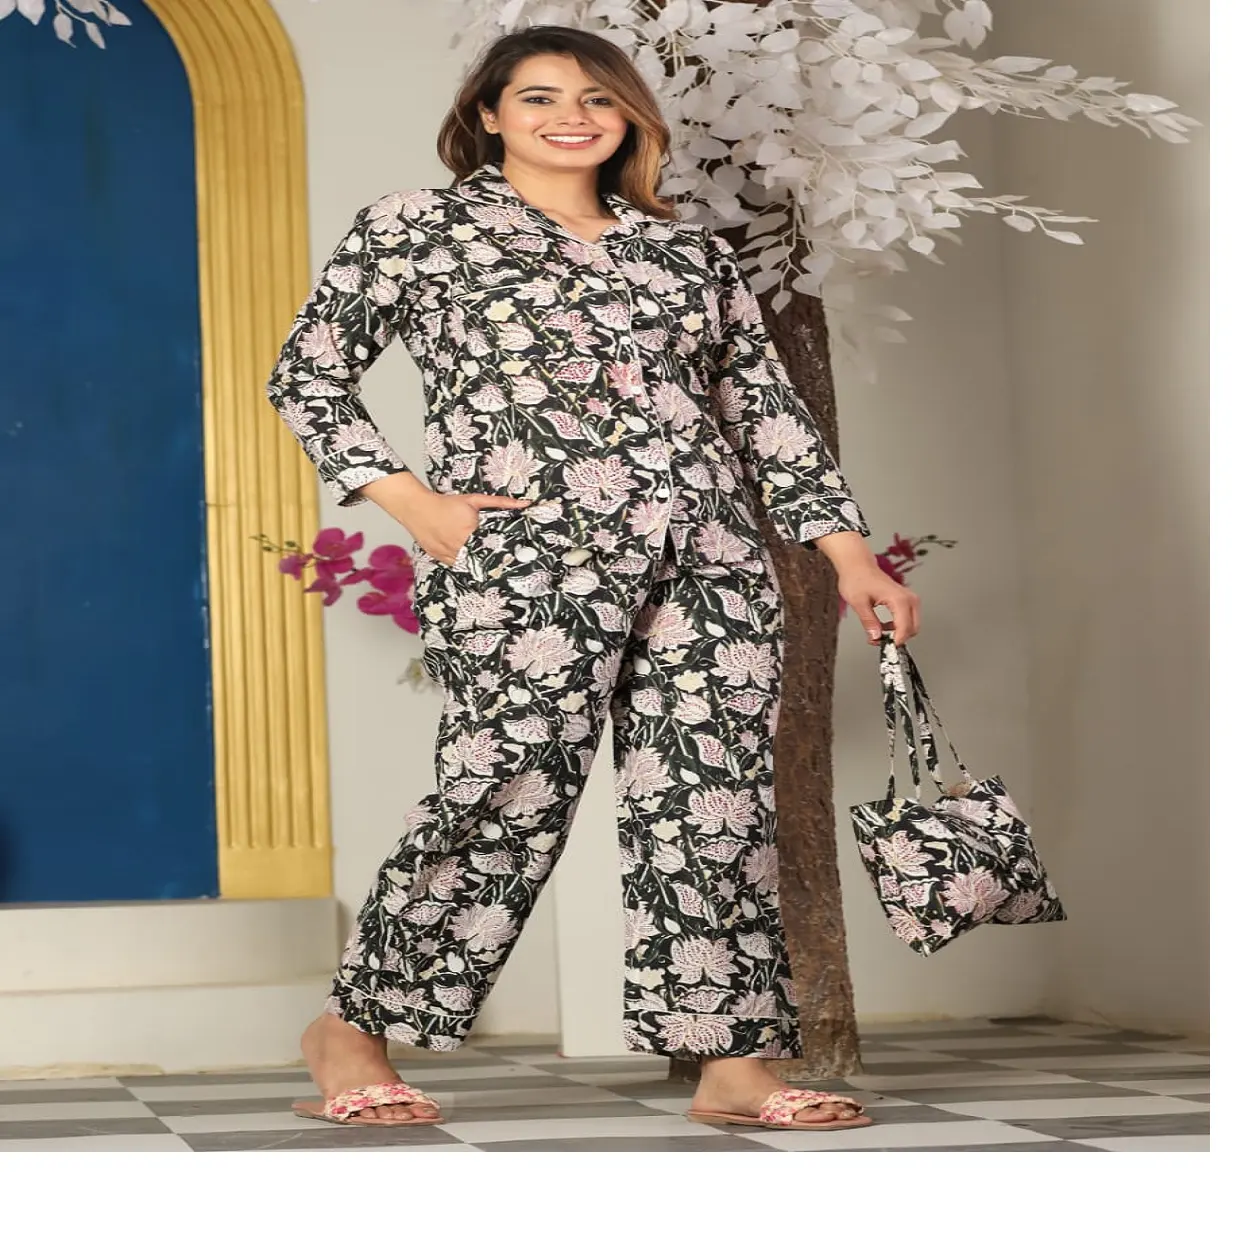 Tùy chỉnh thực hiện bông in đêm ăn mặc, có sẵn trong các kích cỡ cho trẻ em gái và phụ nữ trên cơ sở màu đen vải & in hoa. Để bán lại.